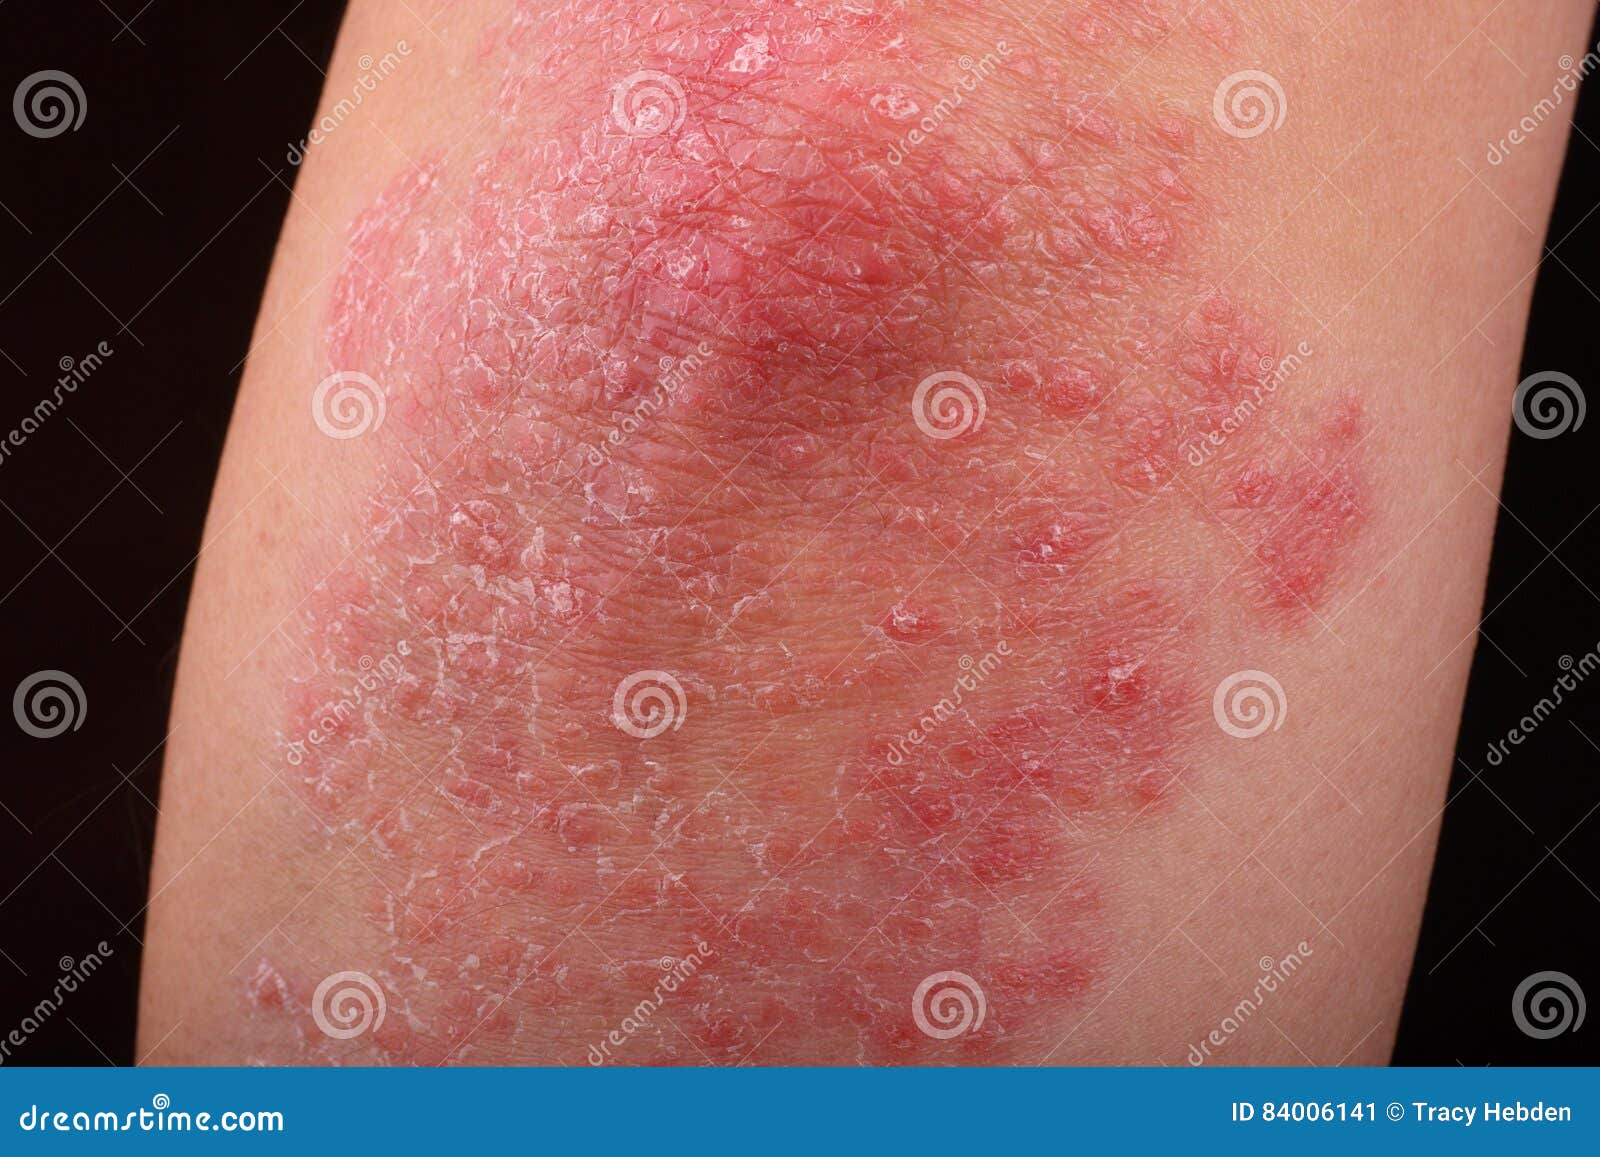 牛皮癣皮肤 牛皮癣是影响鳞状皮肤原因皮肤的炎症红色和的一个自体免疫病 湿疹 库存照片 - 图片 包括有 现有量, 刺耳: 111841588